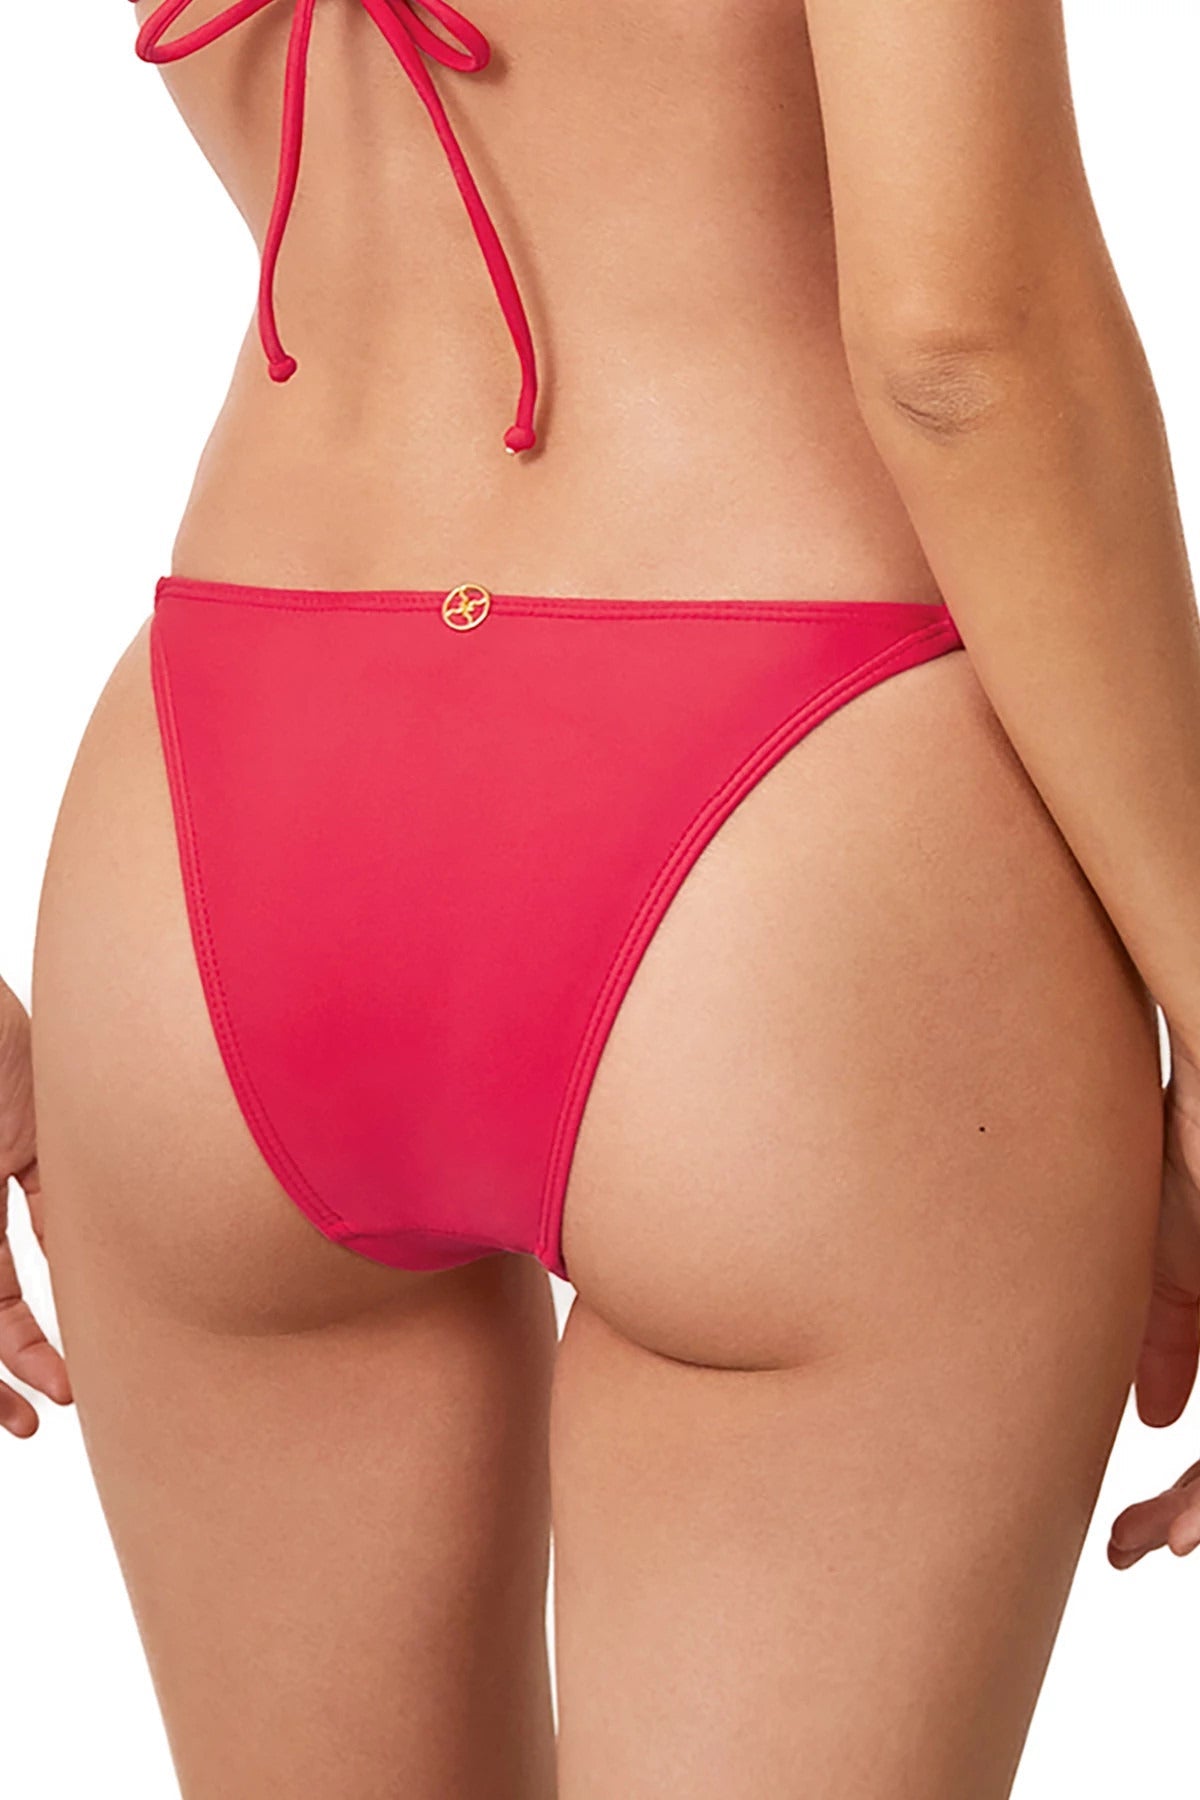 Vix Swimwear Women's Layla Tab Side Brazilian Bikini Bottom - RED POPPY